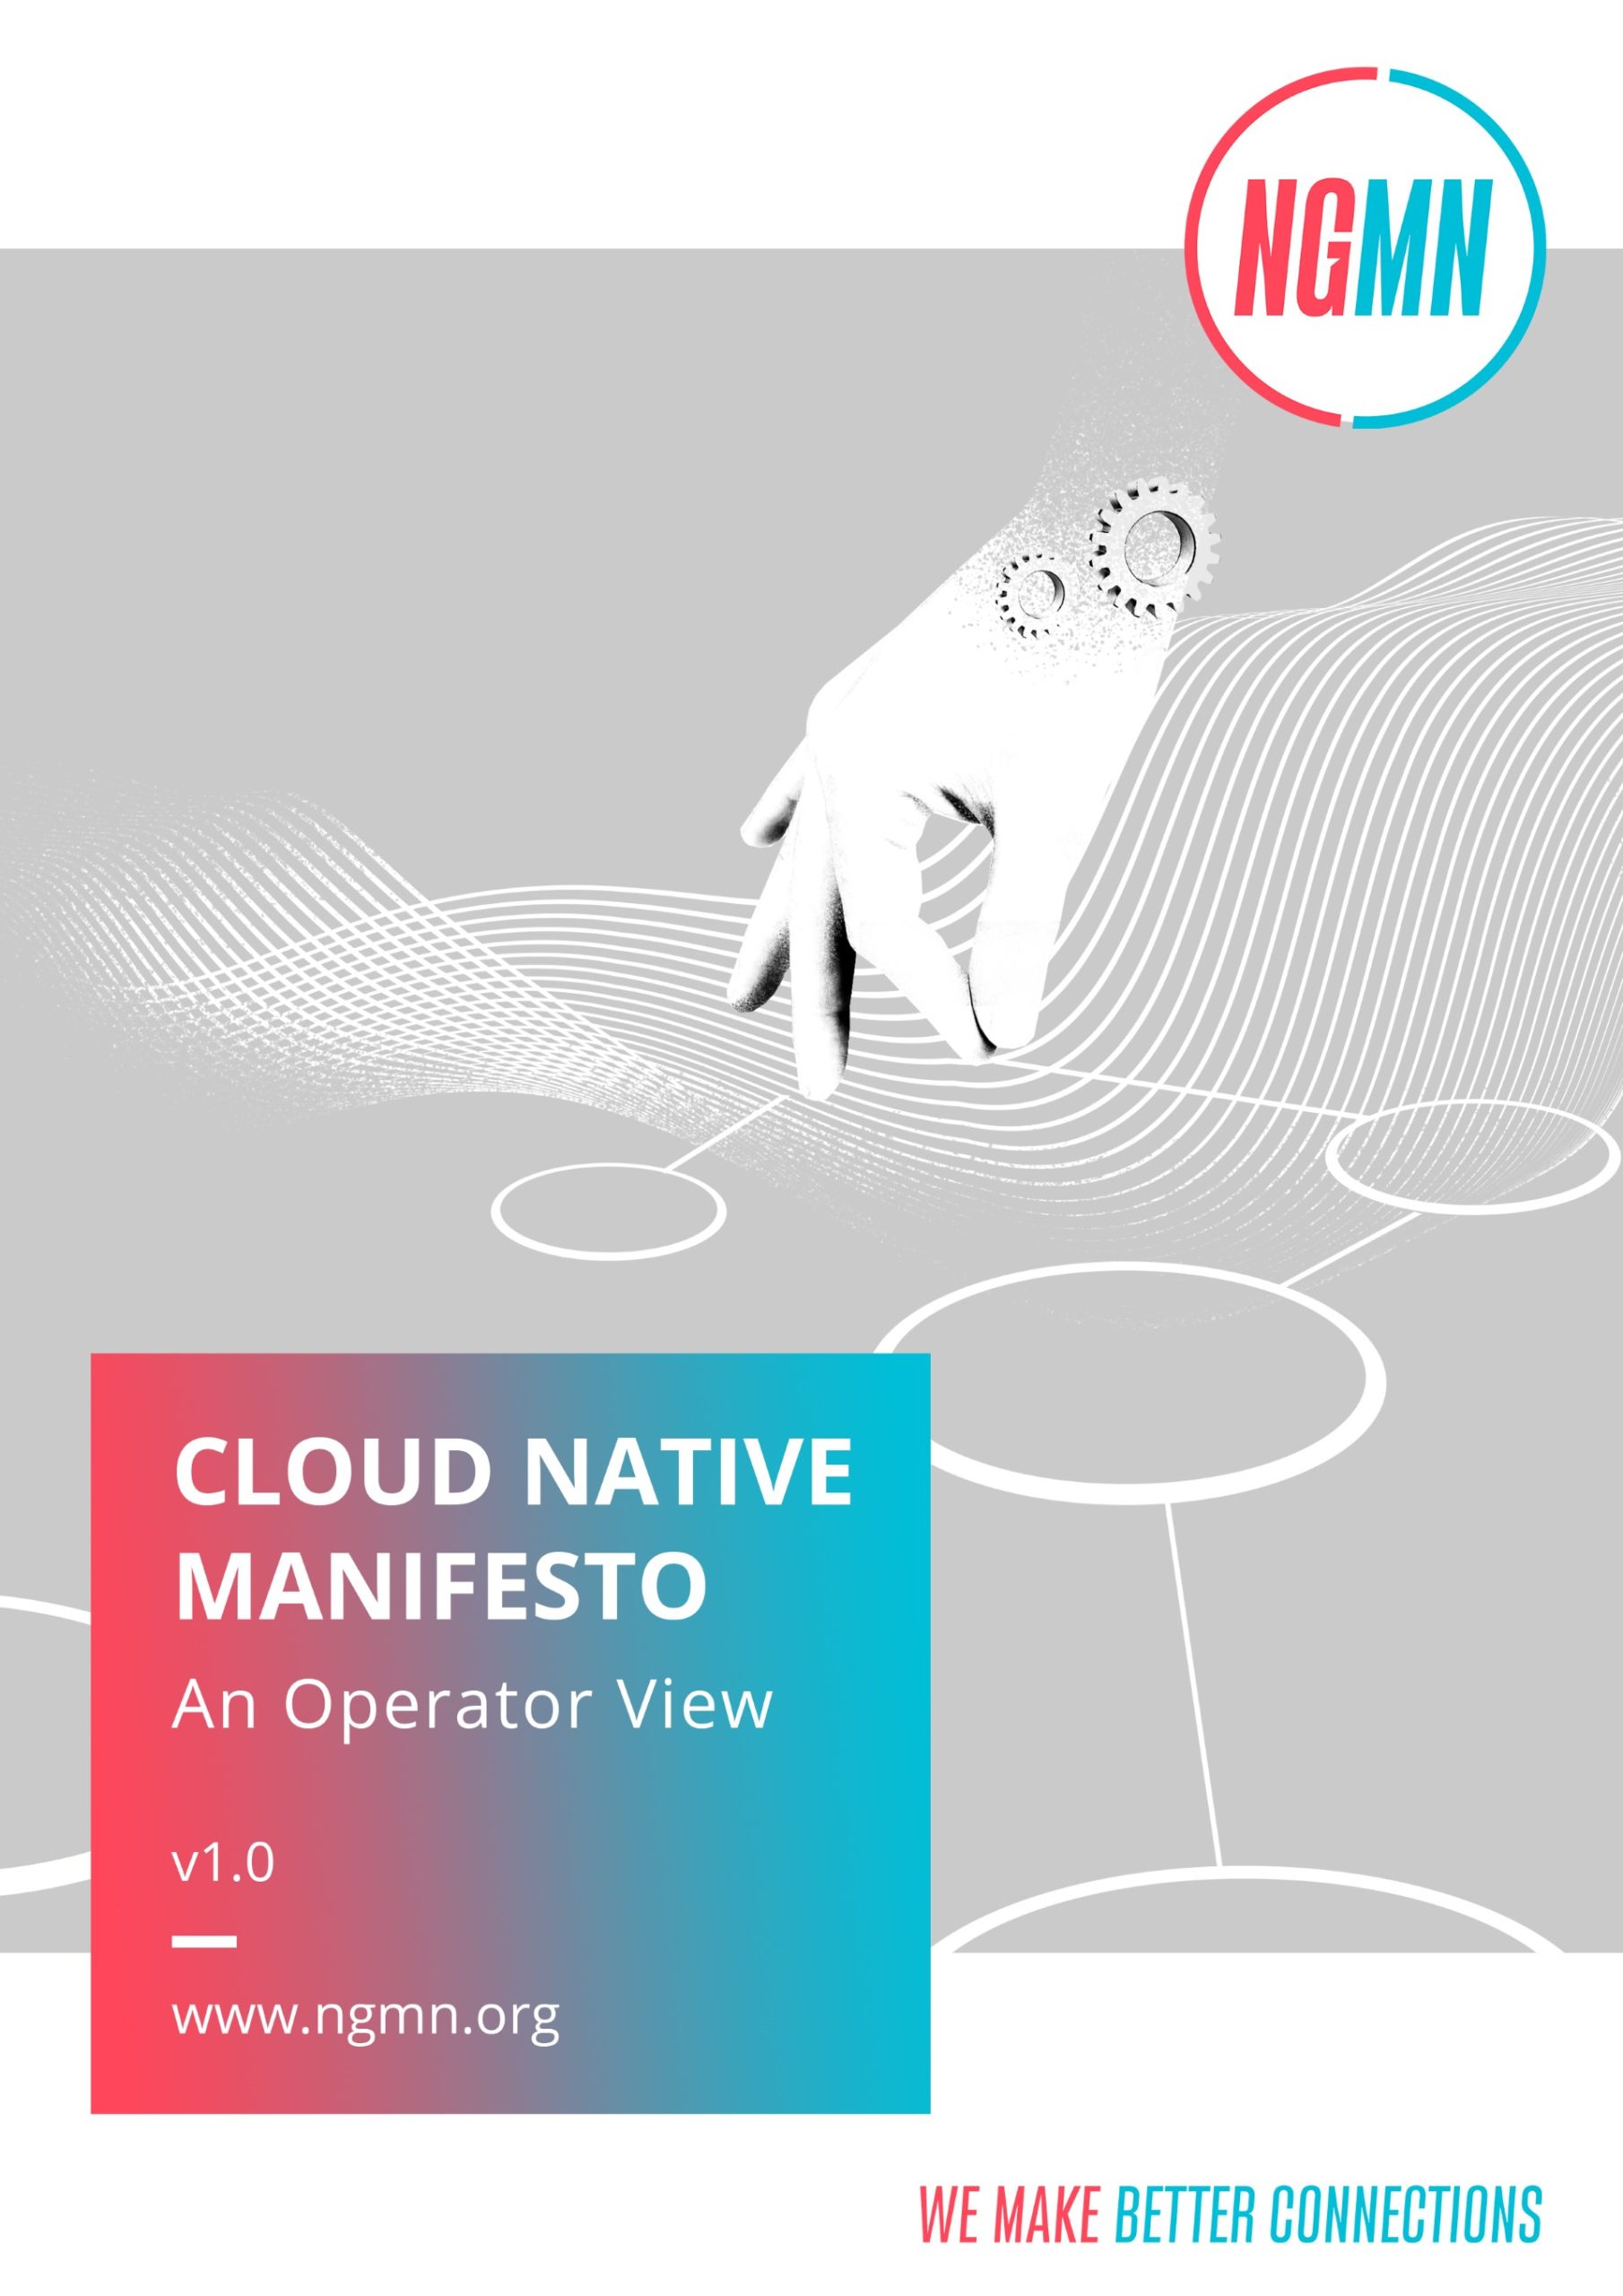 NGMN publishes cloud native manifesto